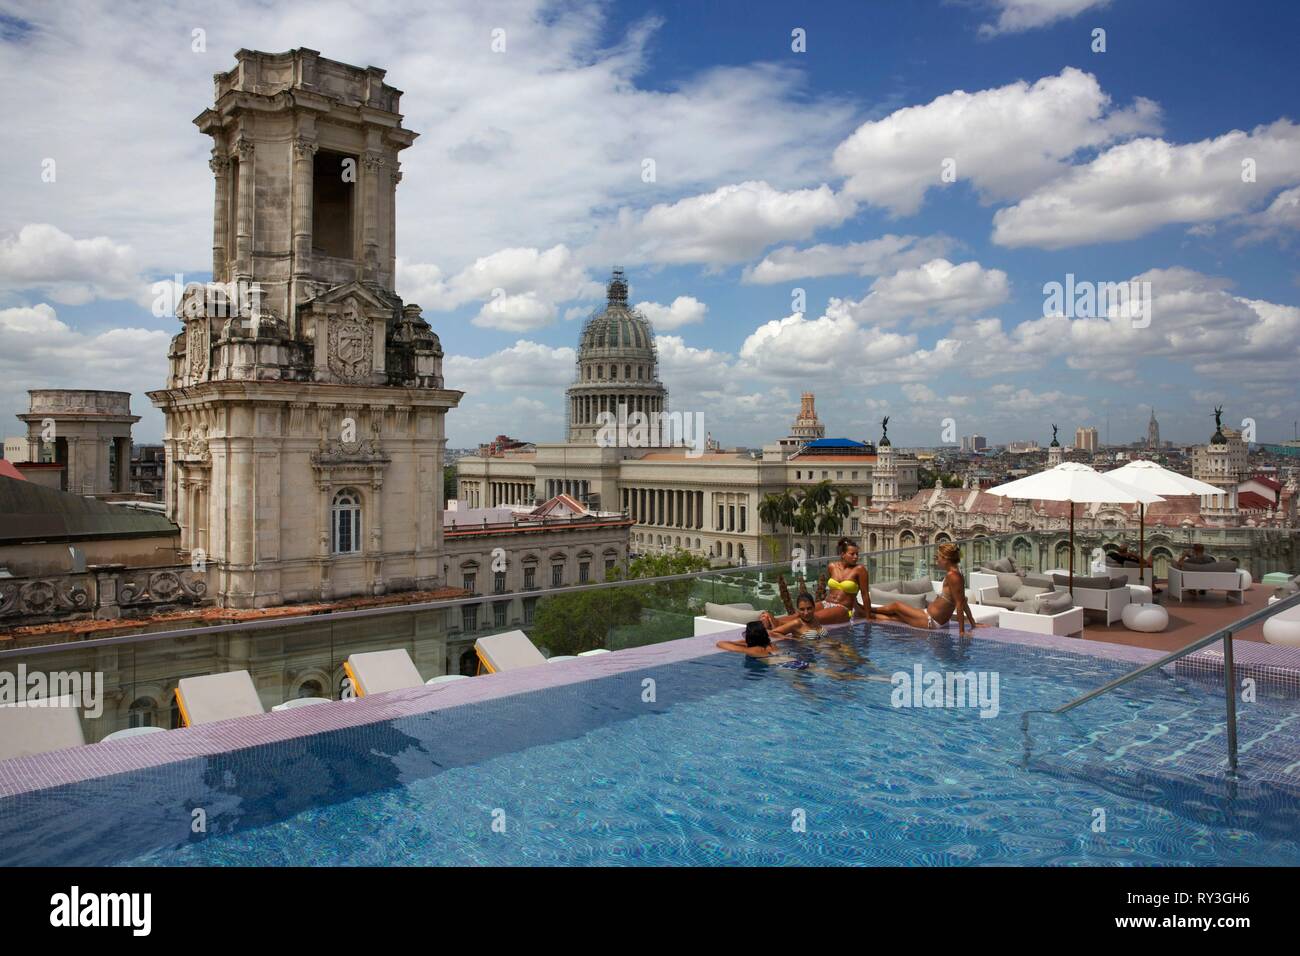 Cuba, La Habana, Havana vecchia, classificato come patrimonio mondiale dall' UNESCO, le donne a bordo della piscina sul tetto del lussuoso Grand hotel Manzana, di fronte al palazzo neoclassico, il Capitole e il Grand Theatre Foto Stock